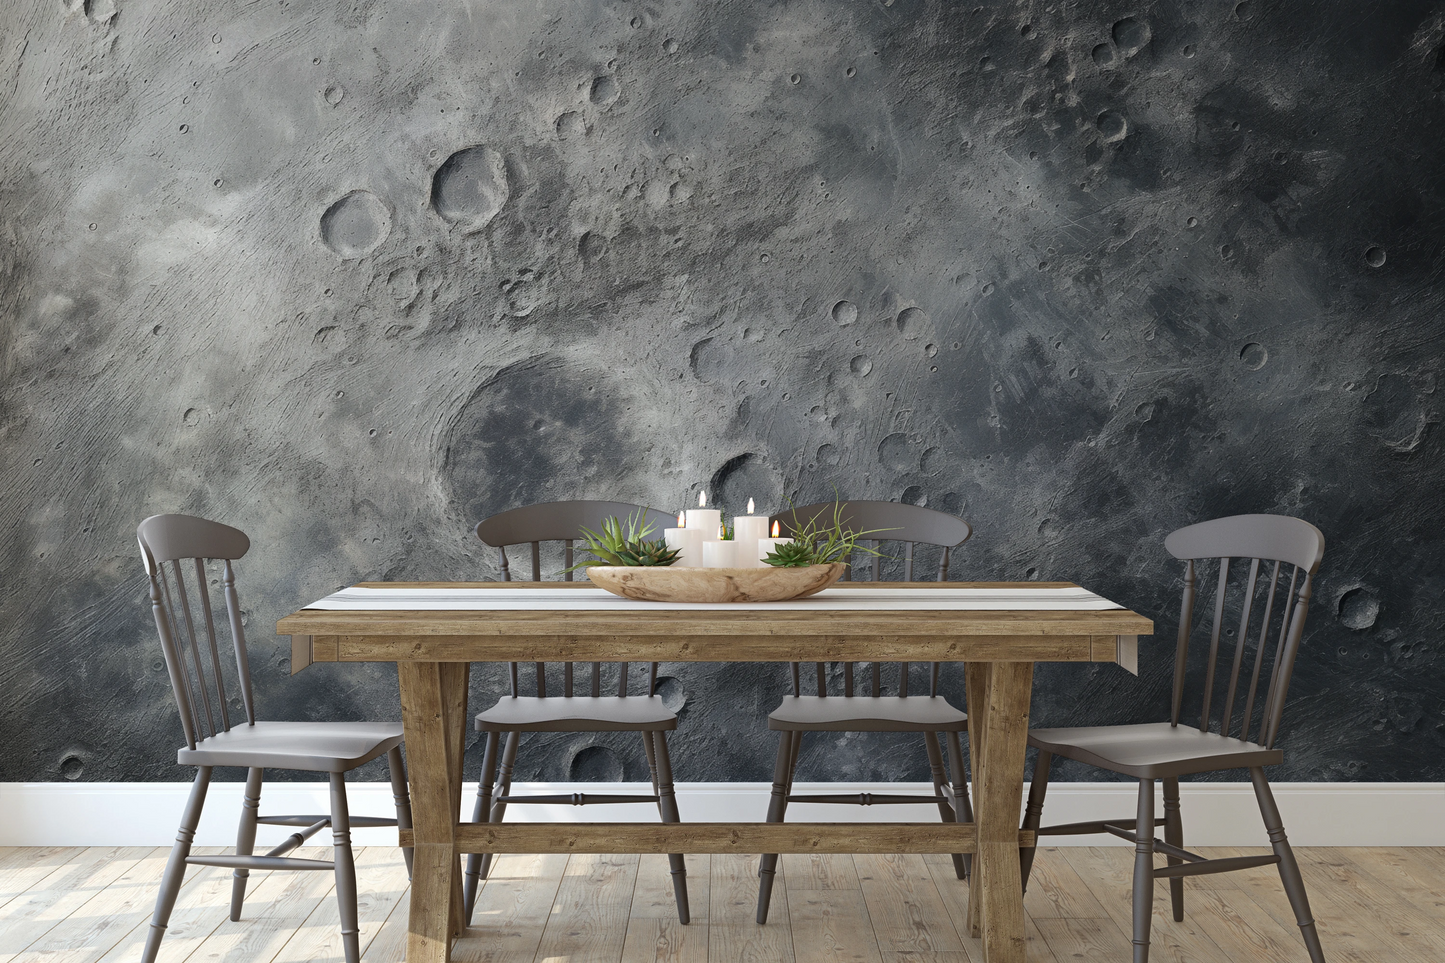 Wzór fototapety o nazwie Lunar Silence #2 pokazanej w kontekście pomieszczenia.